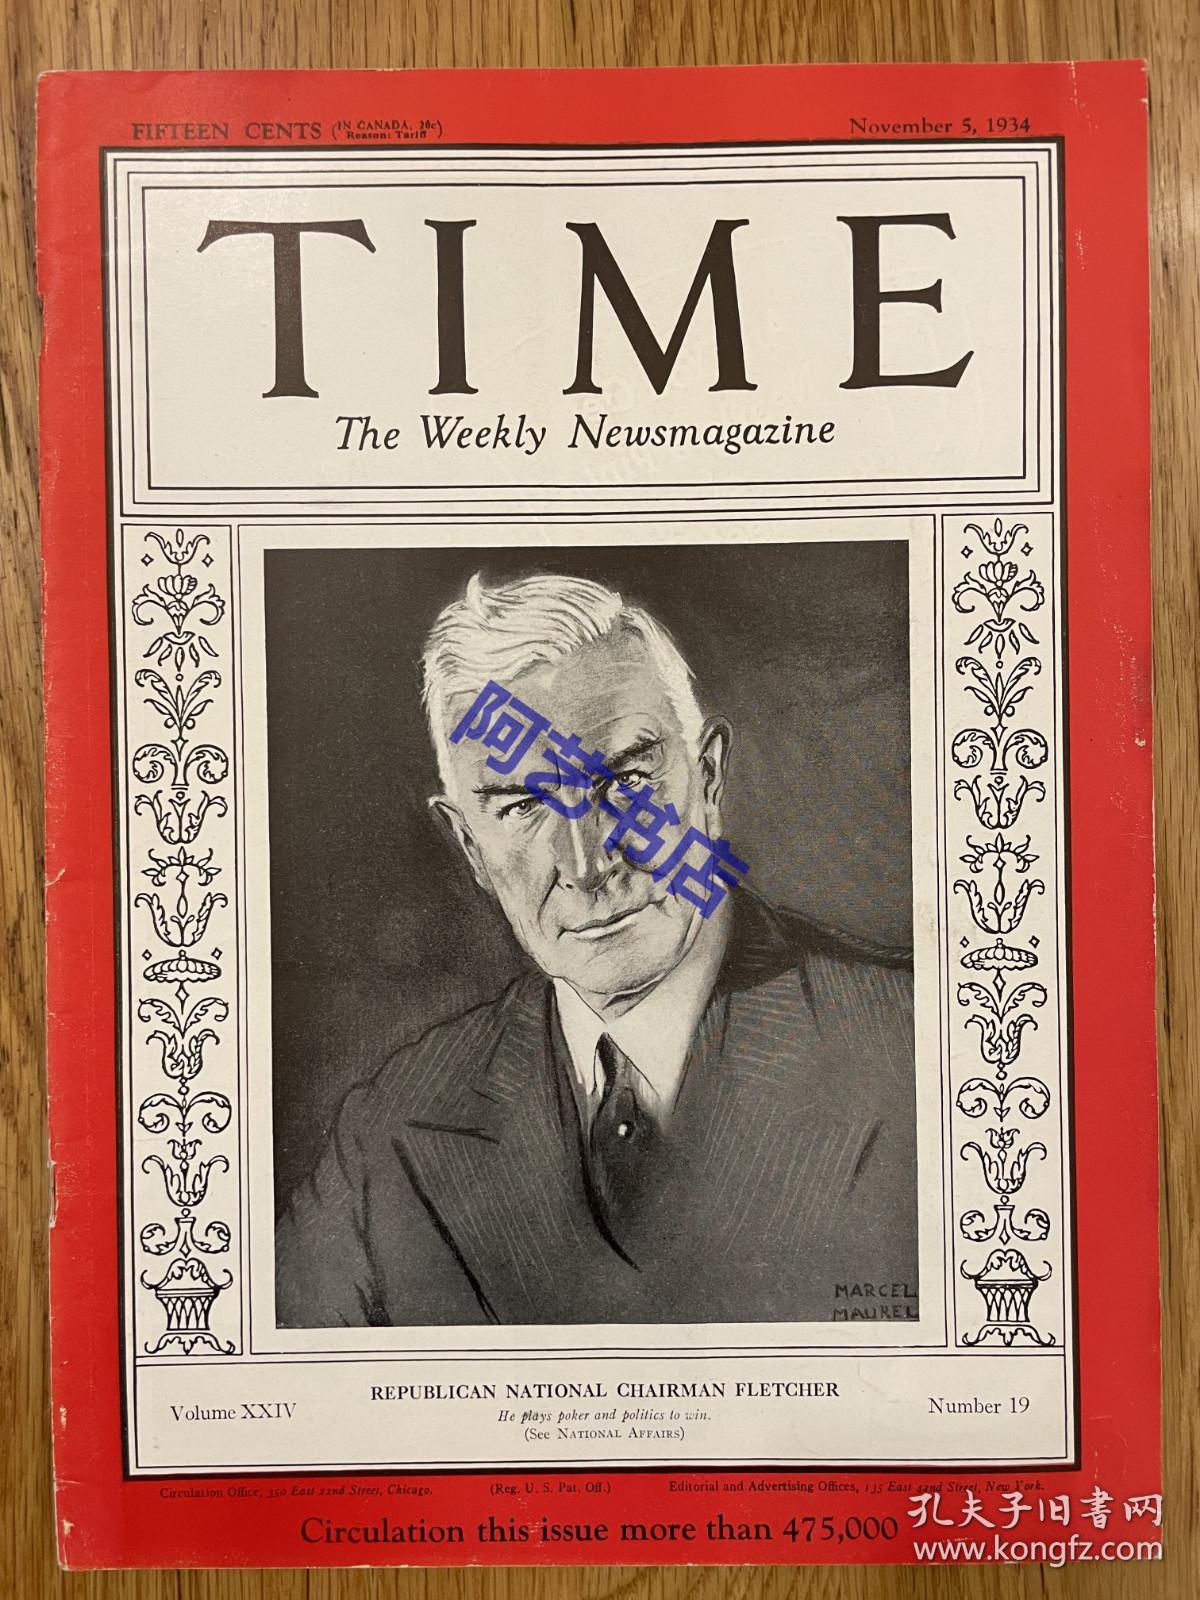 【现货】时代周刊杂志 TIME MAGAZINE，1934年11月5日，封面 “ 亨利·普拉瑟·弗莱彻 ”，美国外交官，从1934年到1936 年，担任共和党主席。珍贵的历史资料。